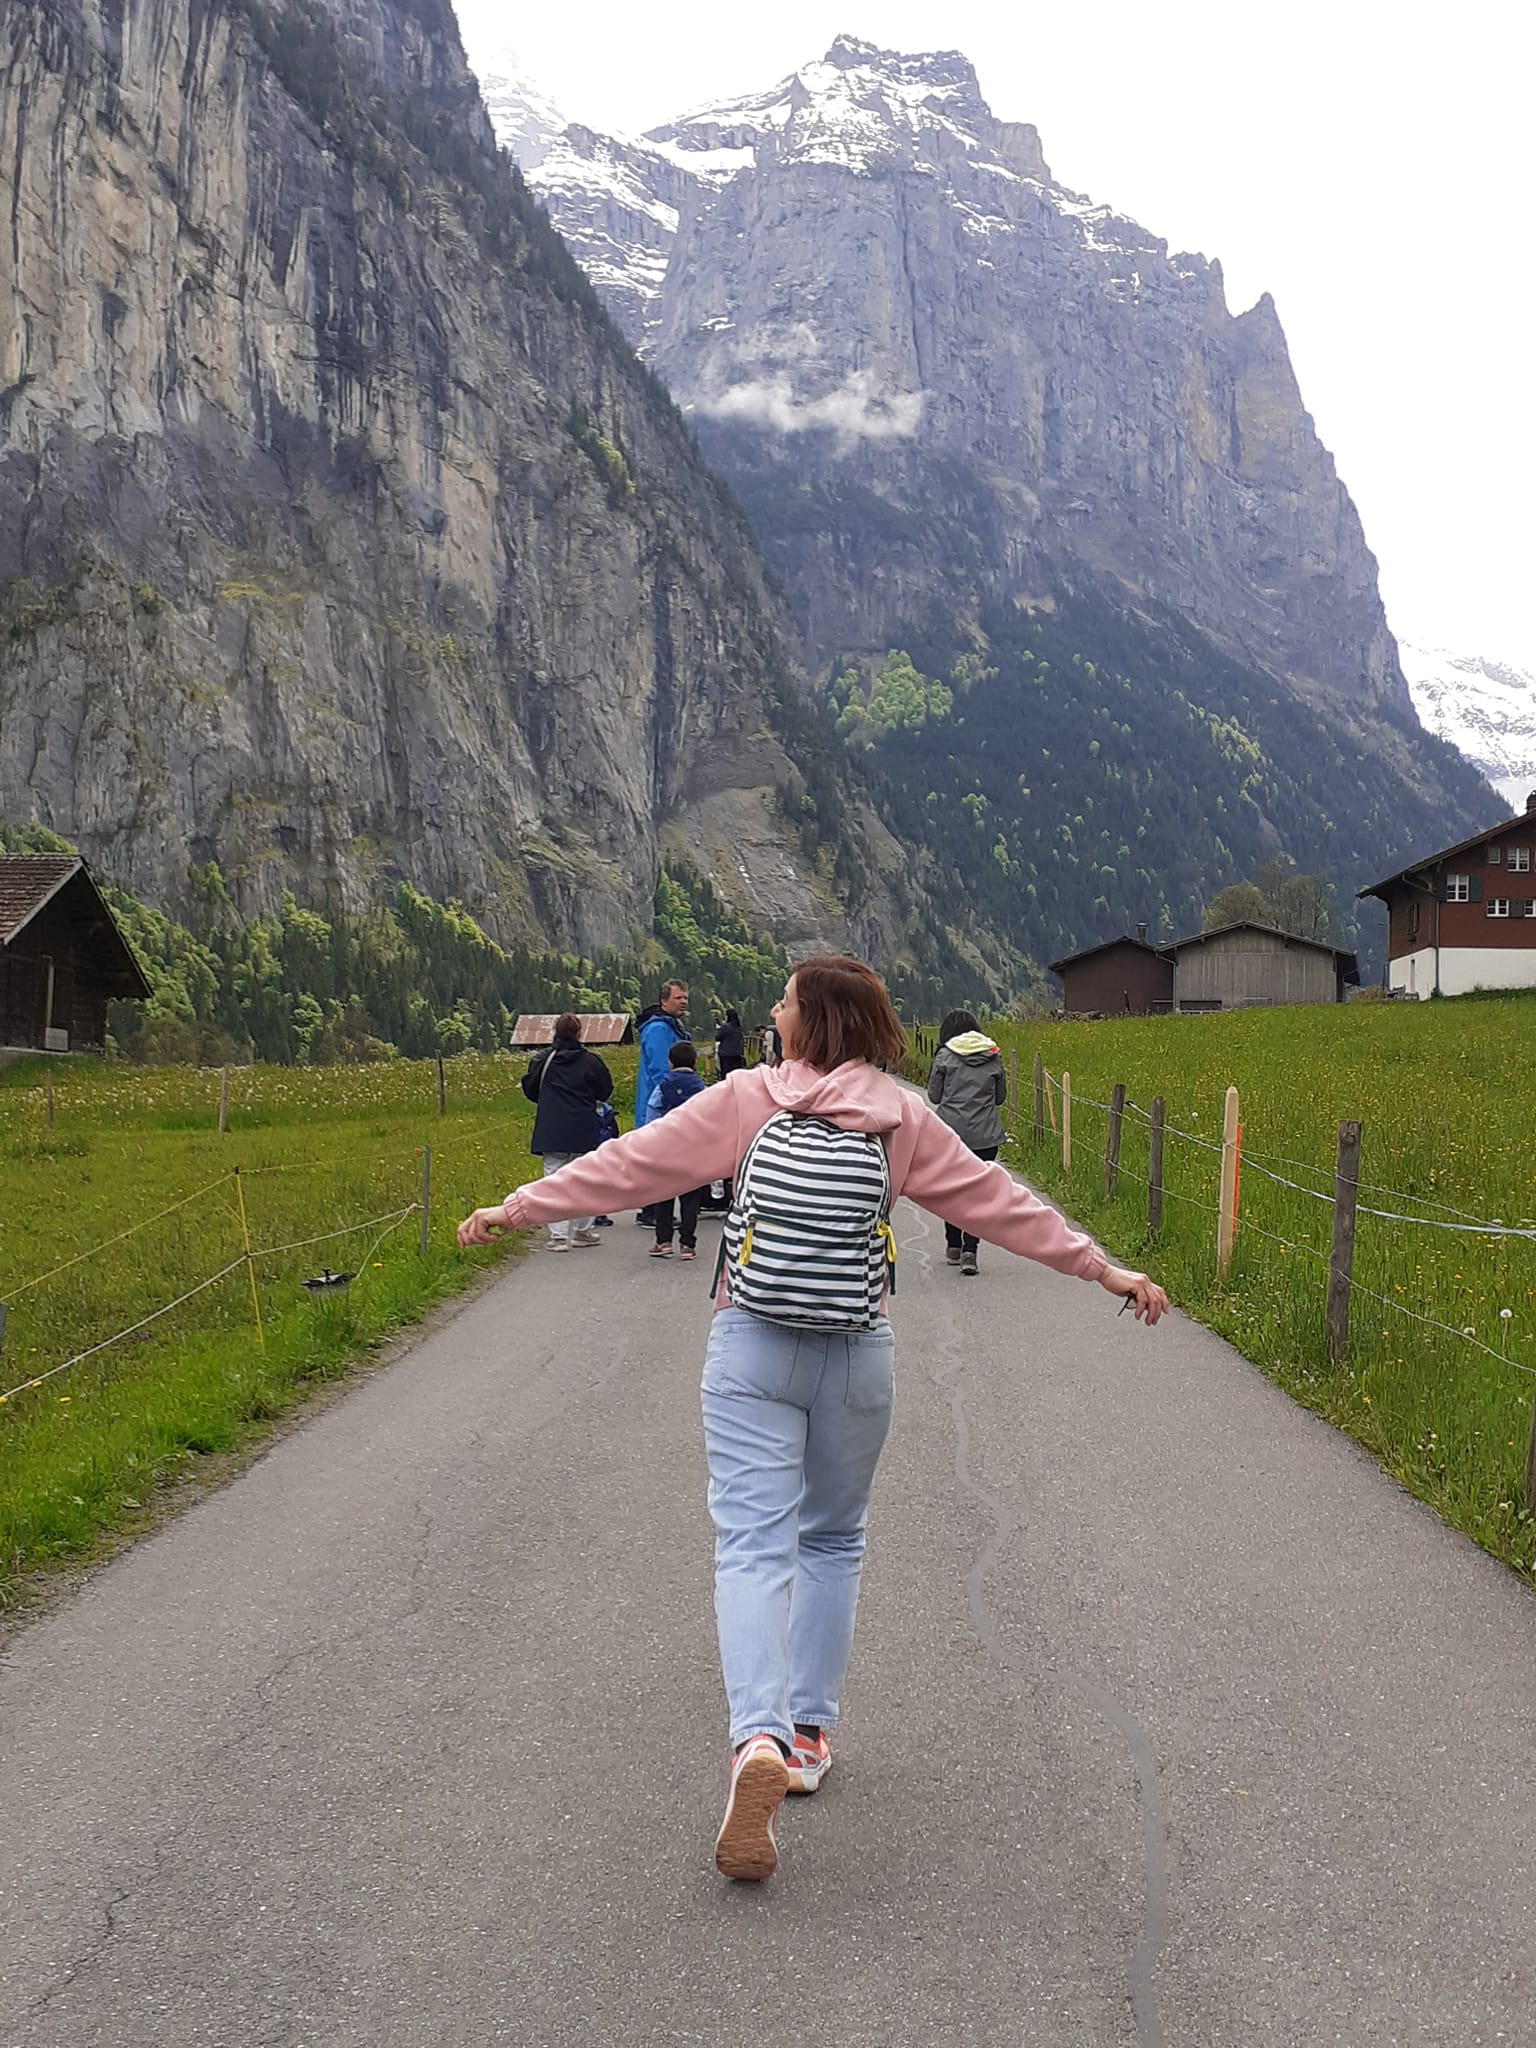 Trip to Switzerland!